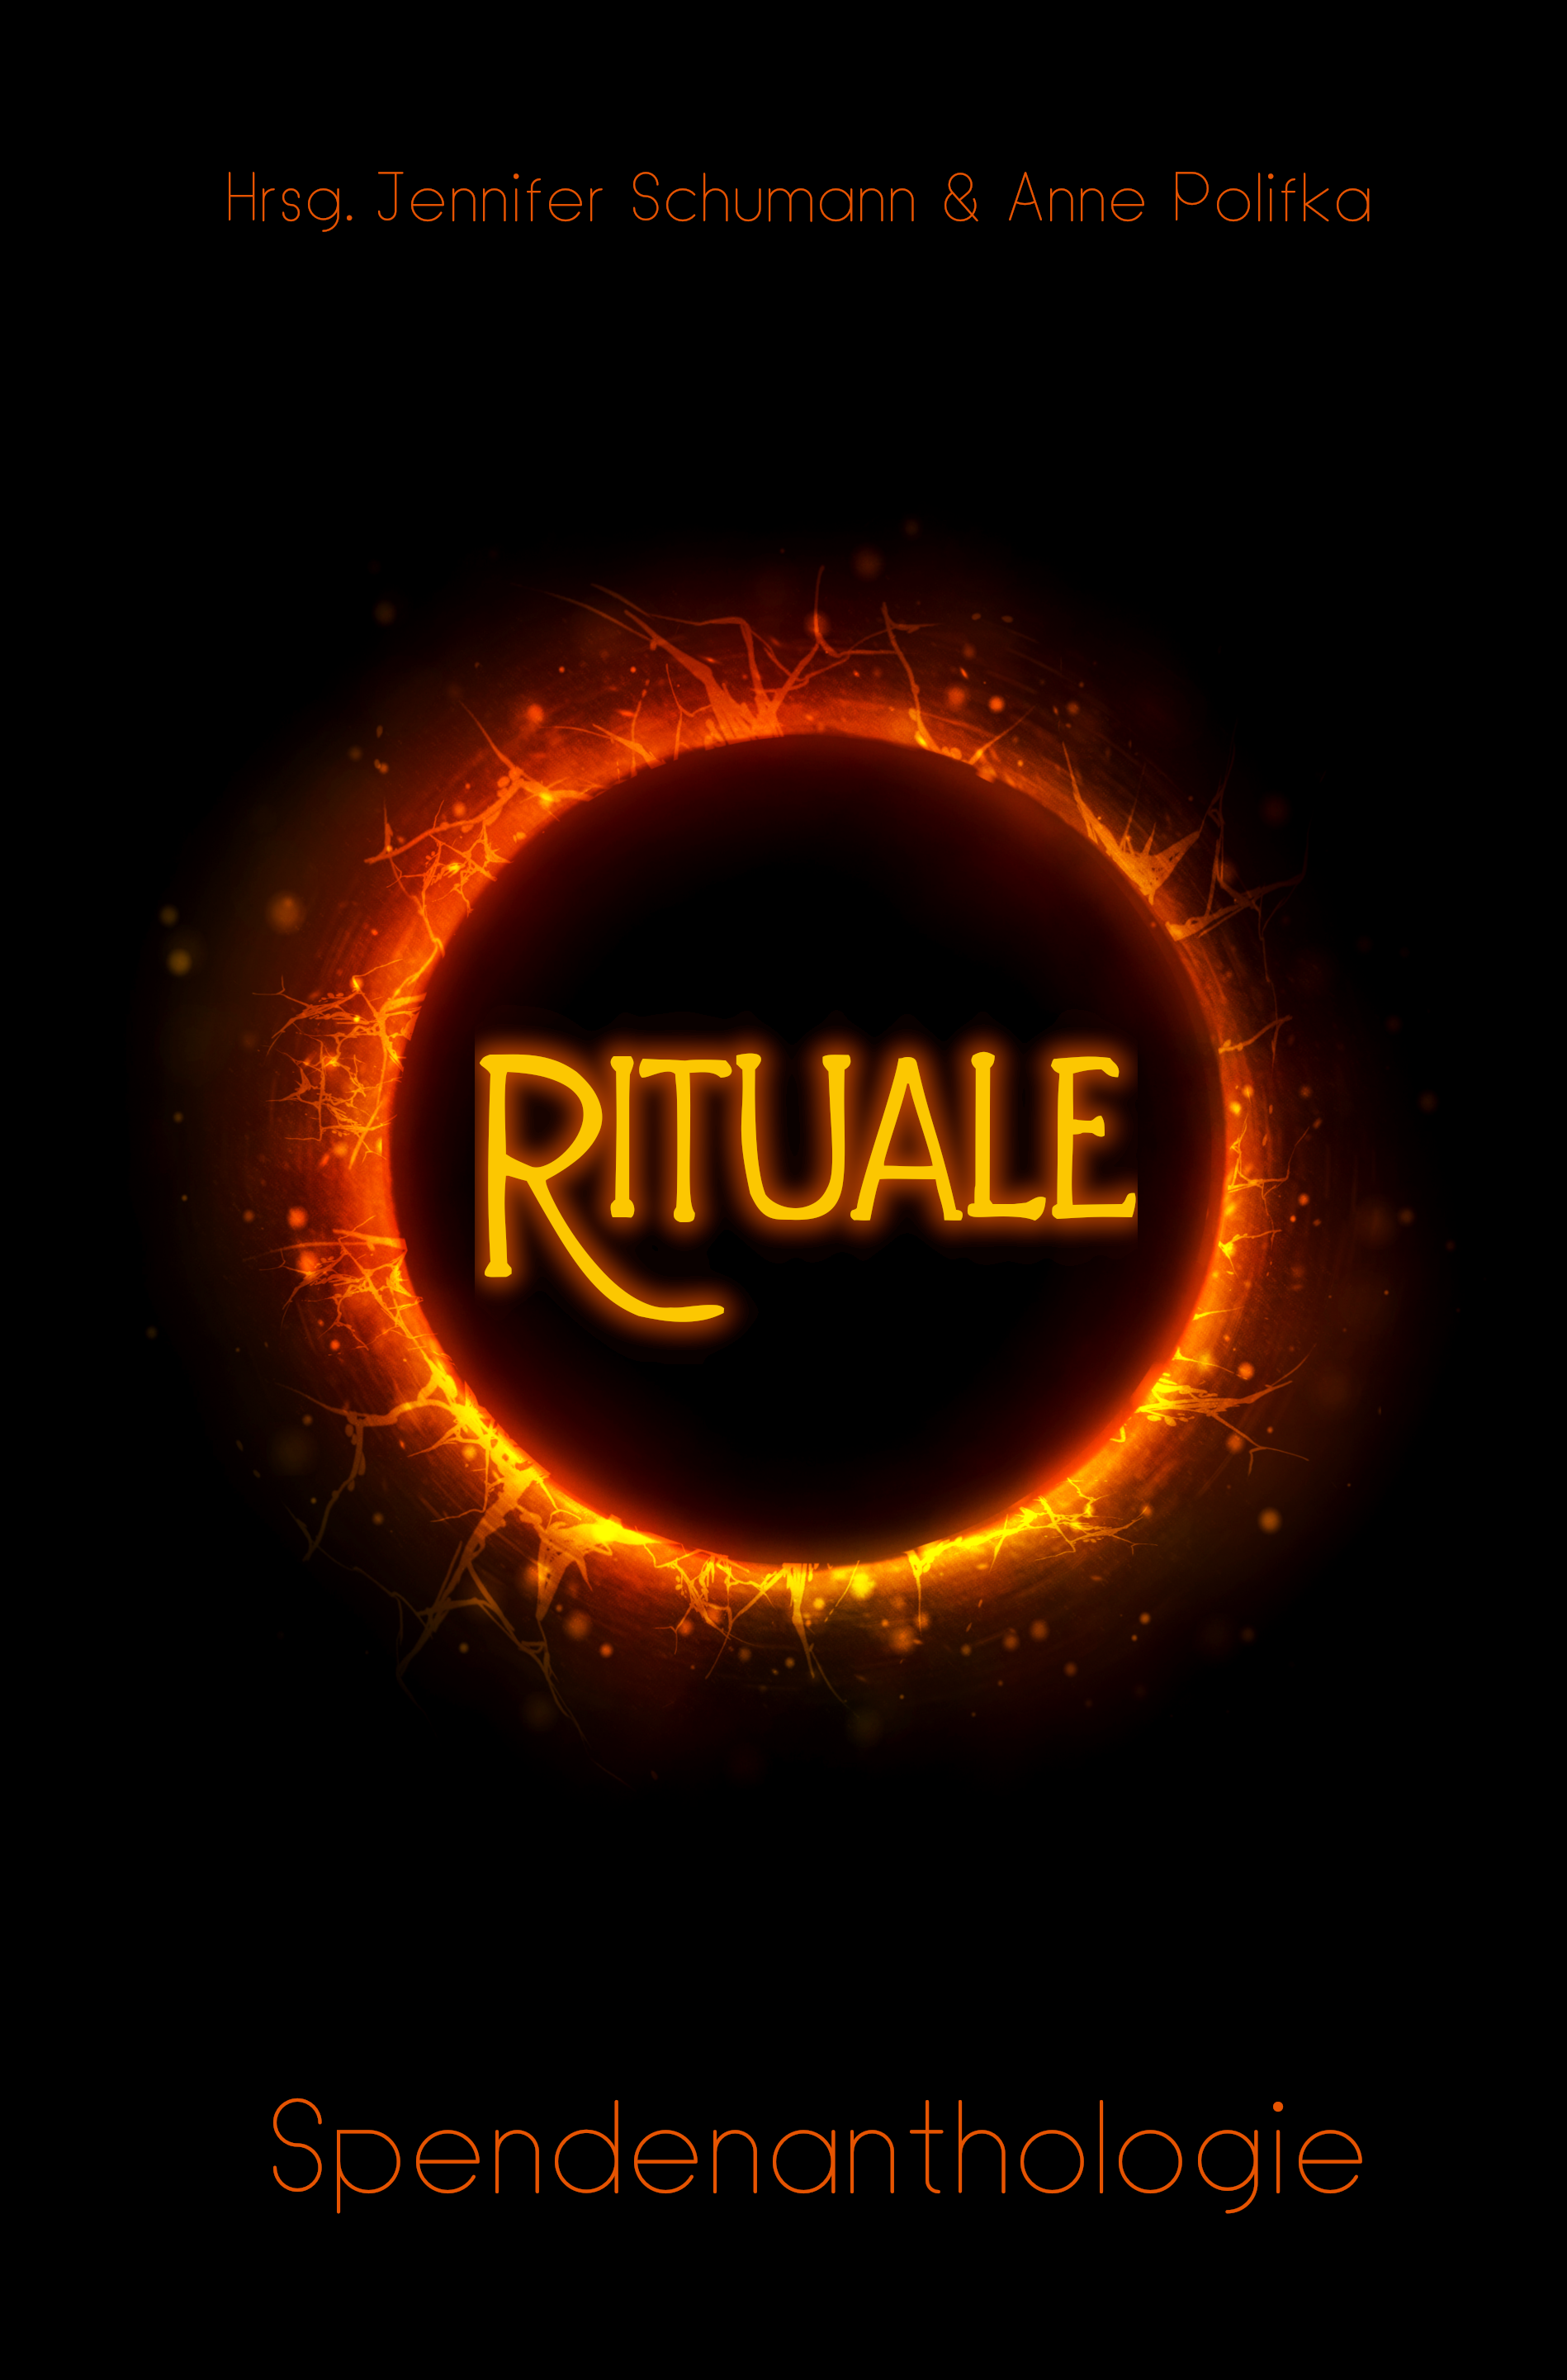 Rituale